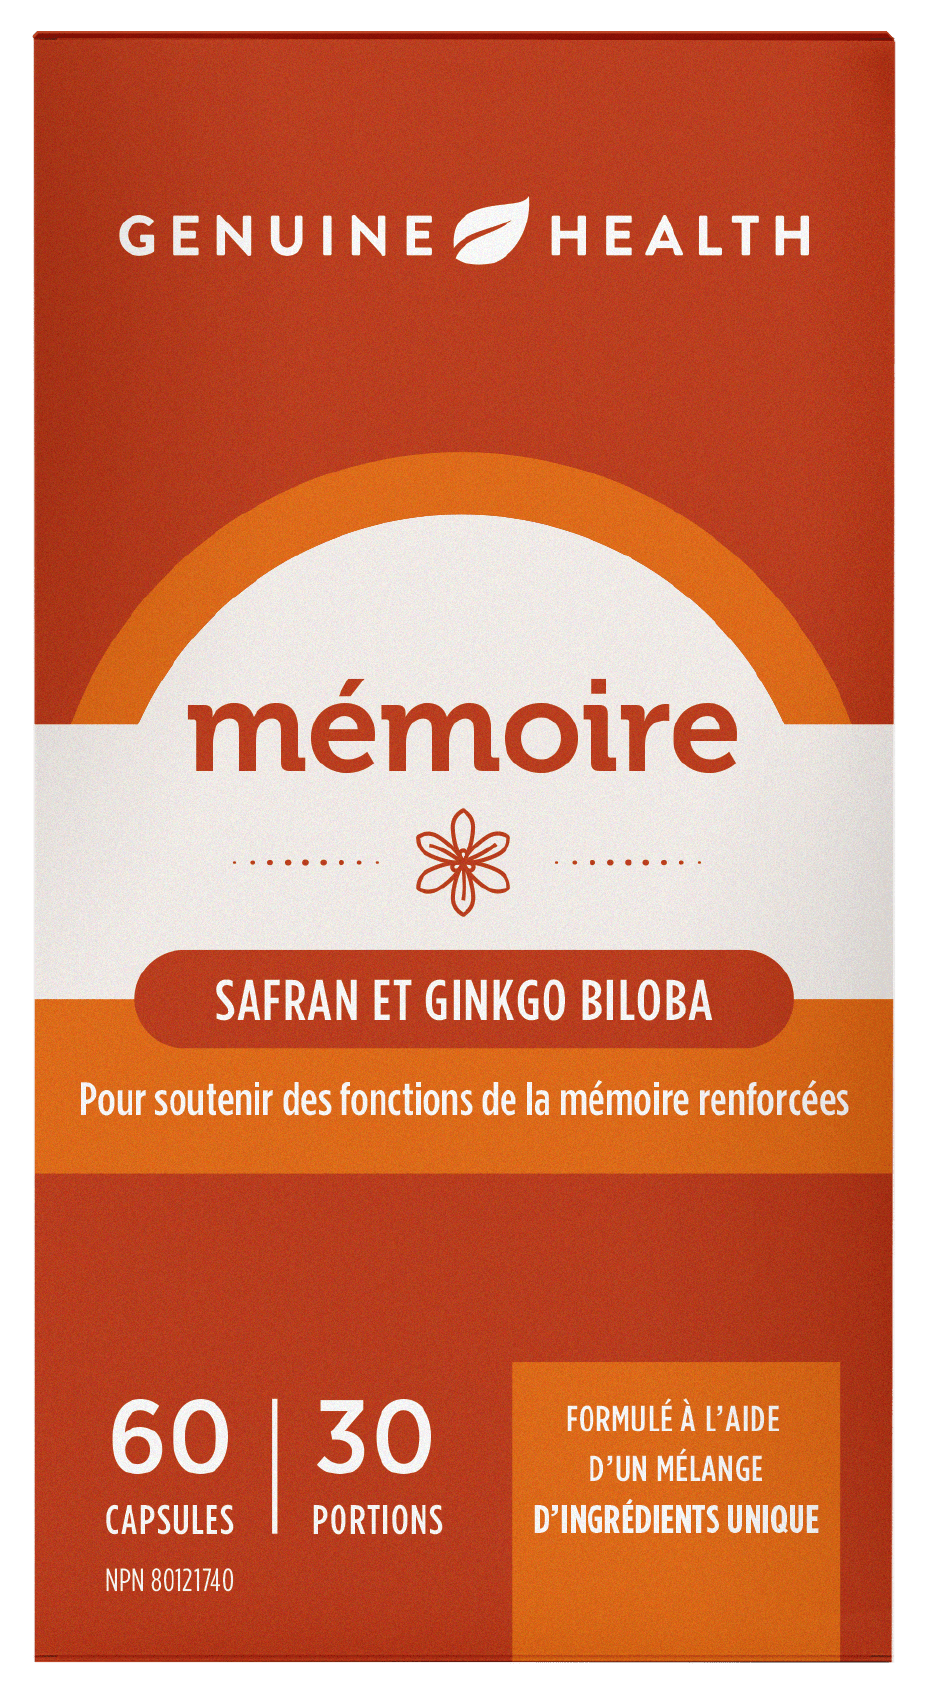 GENUINE HEALTH Suppléments Mémoire (safran et ginkgo biloba) 60caps